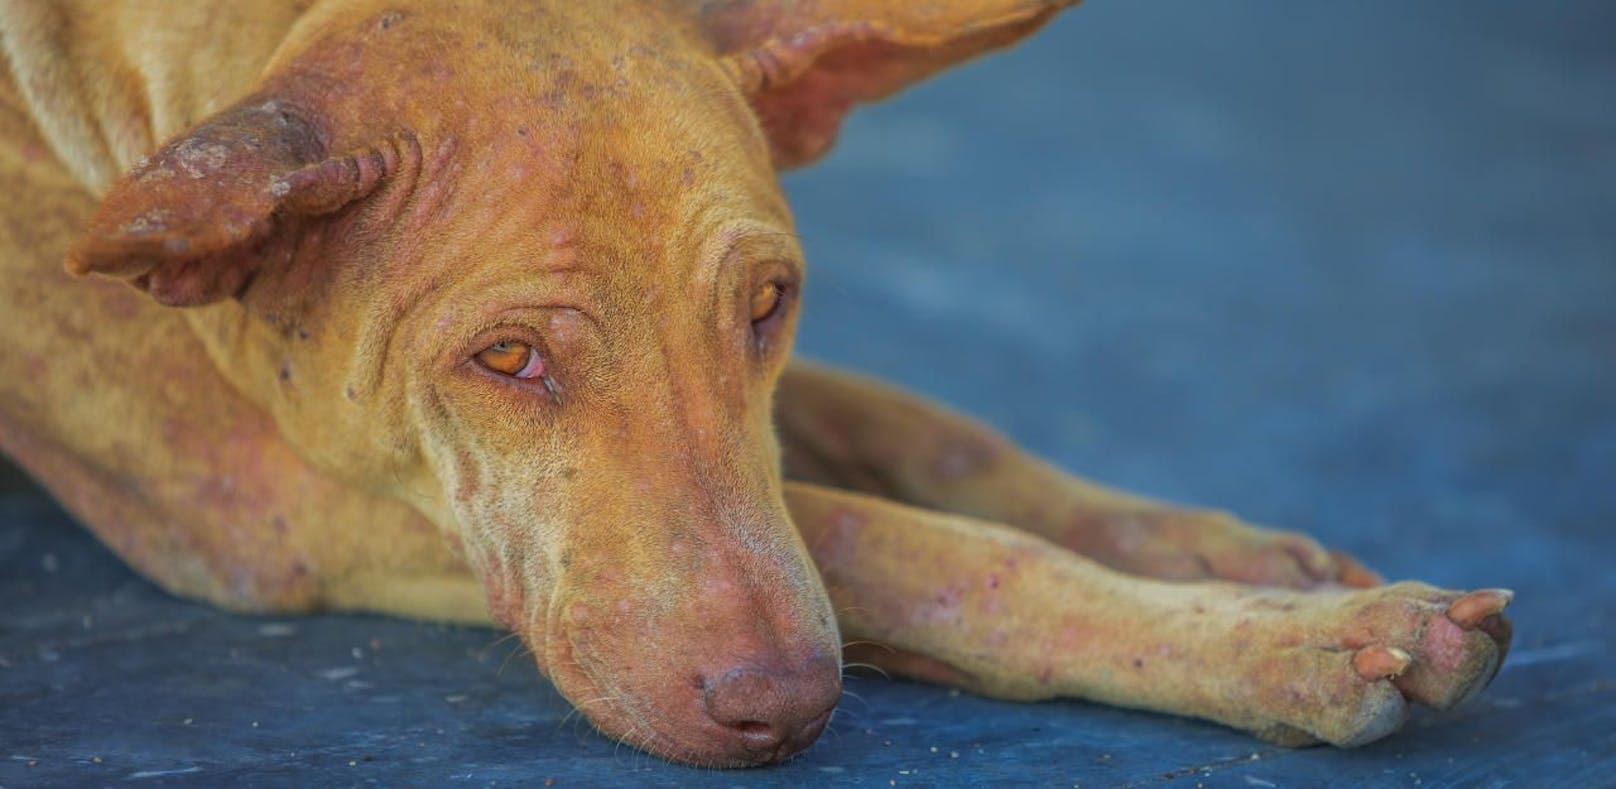 "Zu unfolgsam": Hund mit  Eisenstange verprügelt